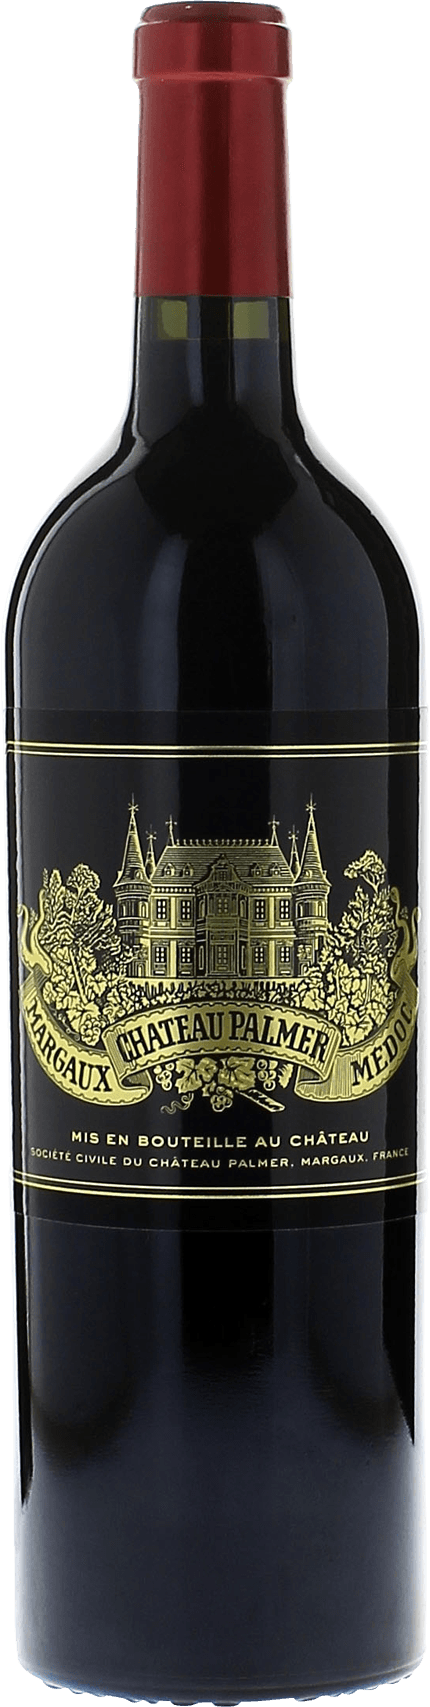 Palmer 1990 3me Grand cru class Margaux, Bordeaux rouge